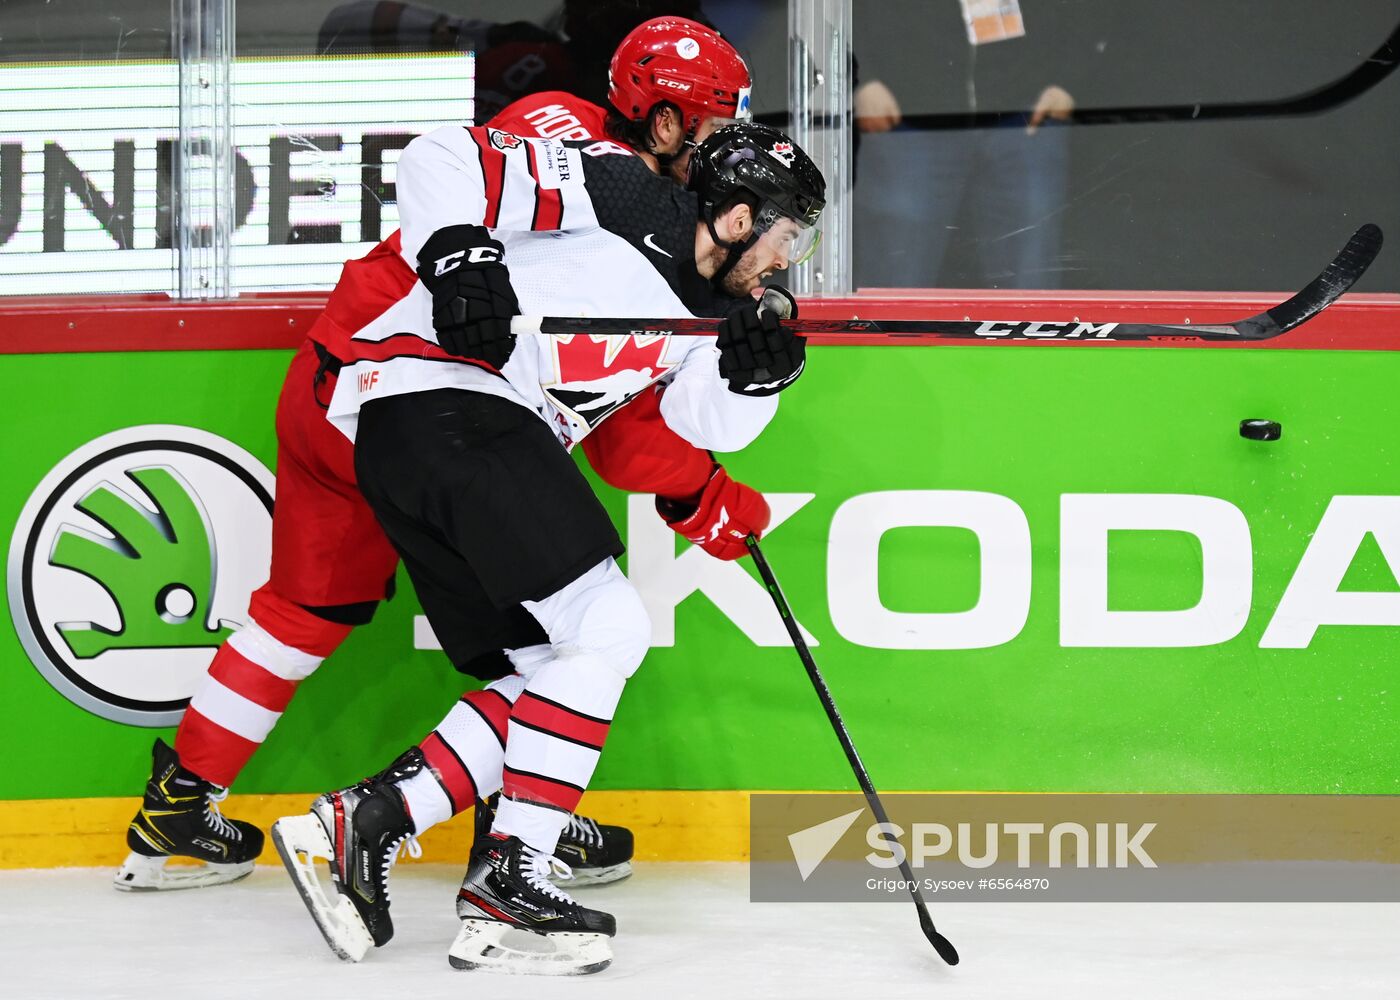 Latvia Ice Hockey Worlds Russia - Canada